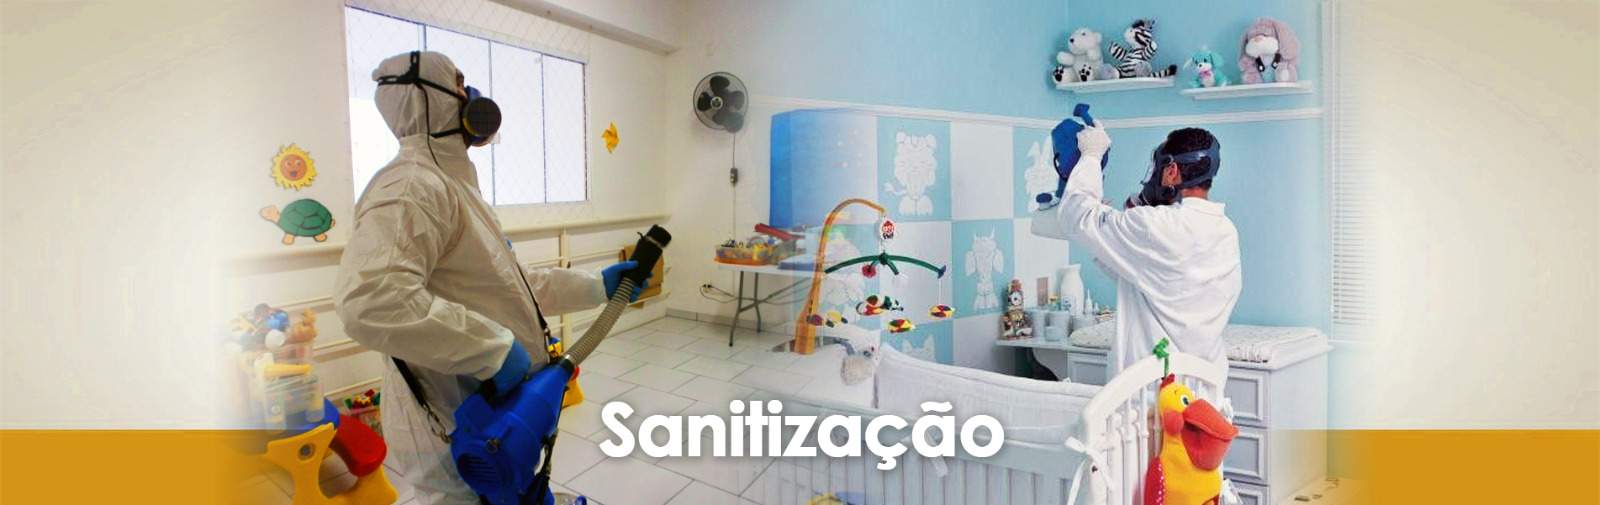 Sanitização 2 - Desinfecção - Sanitização